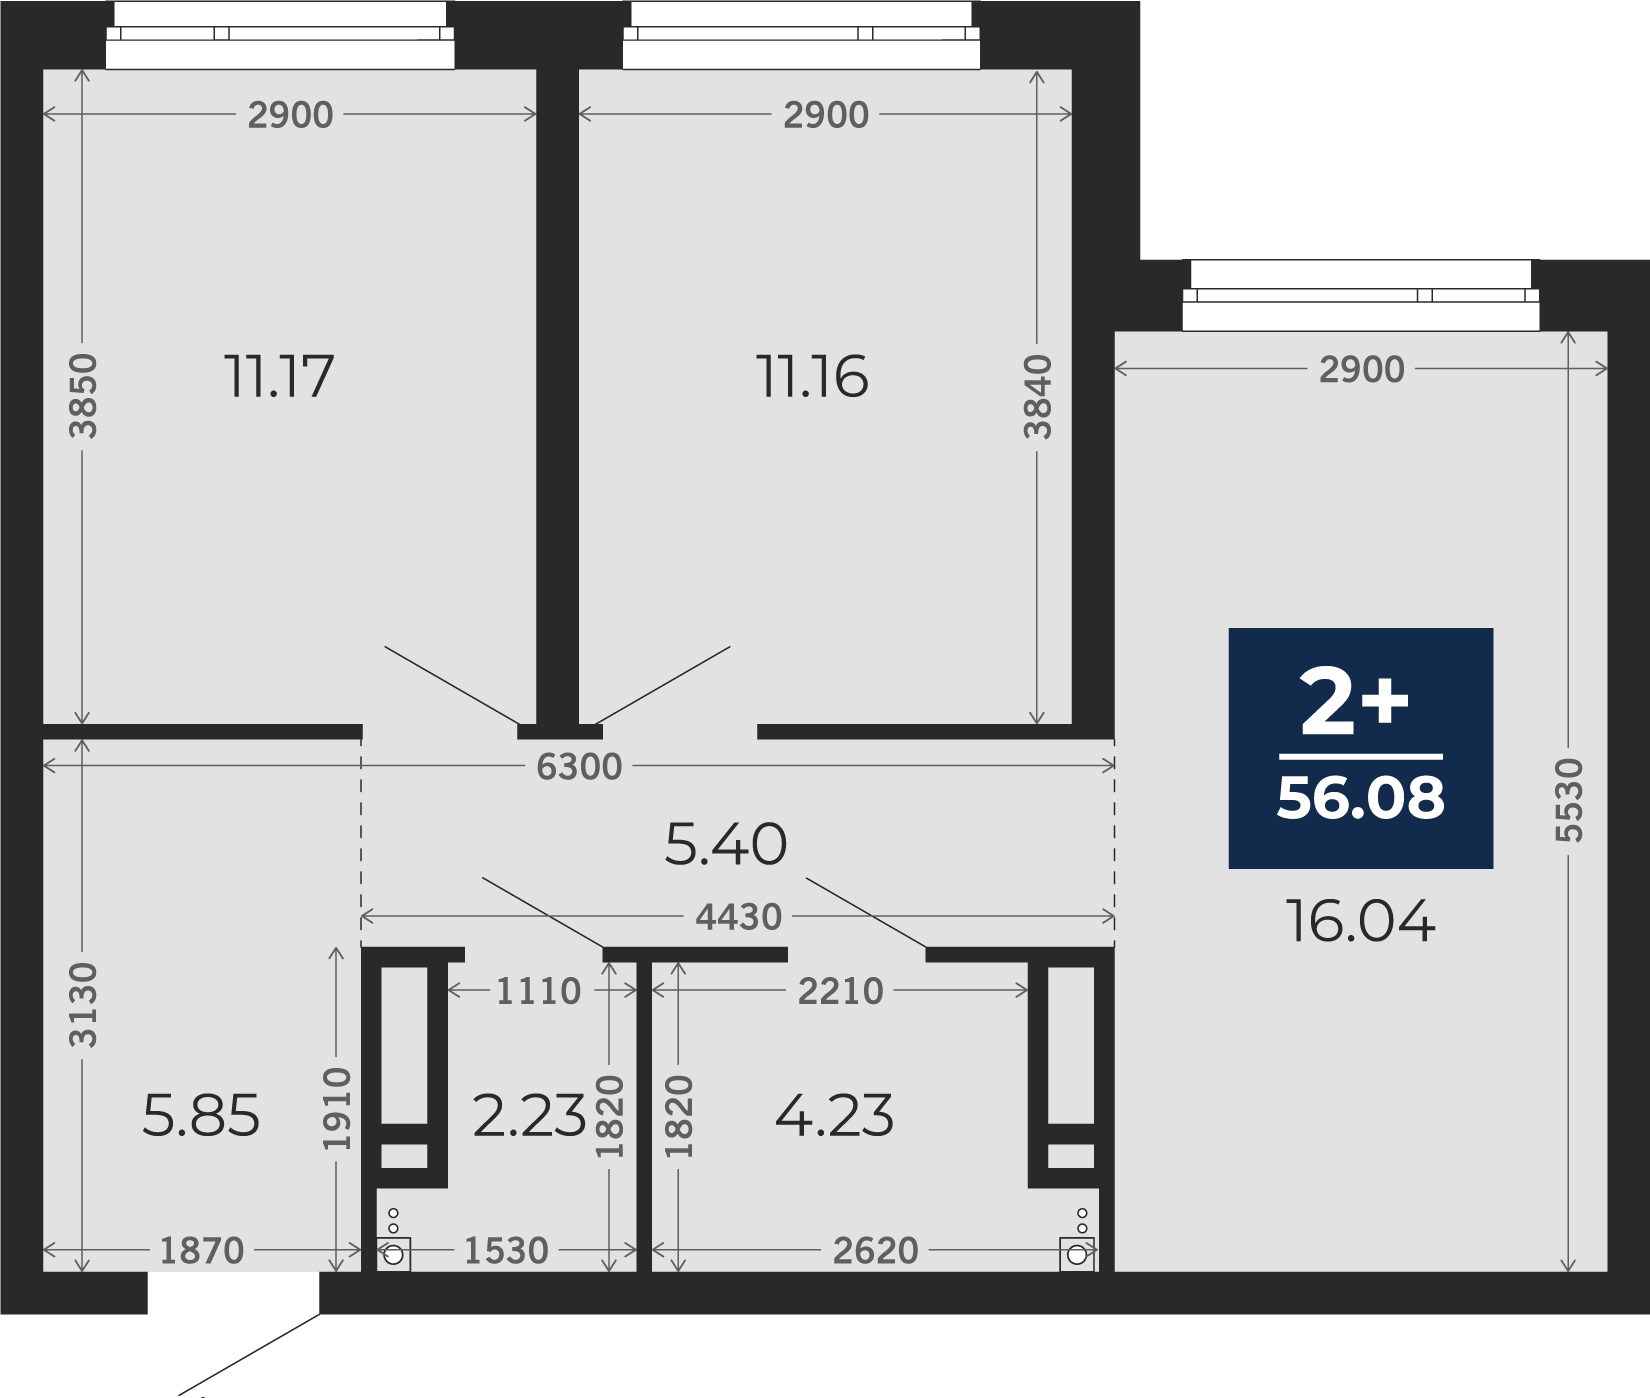 Квартира № 144, 2-комнатная, 56.08 кв. м, 4 этаж